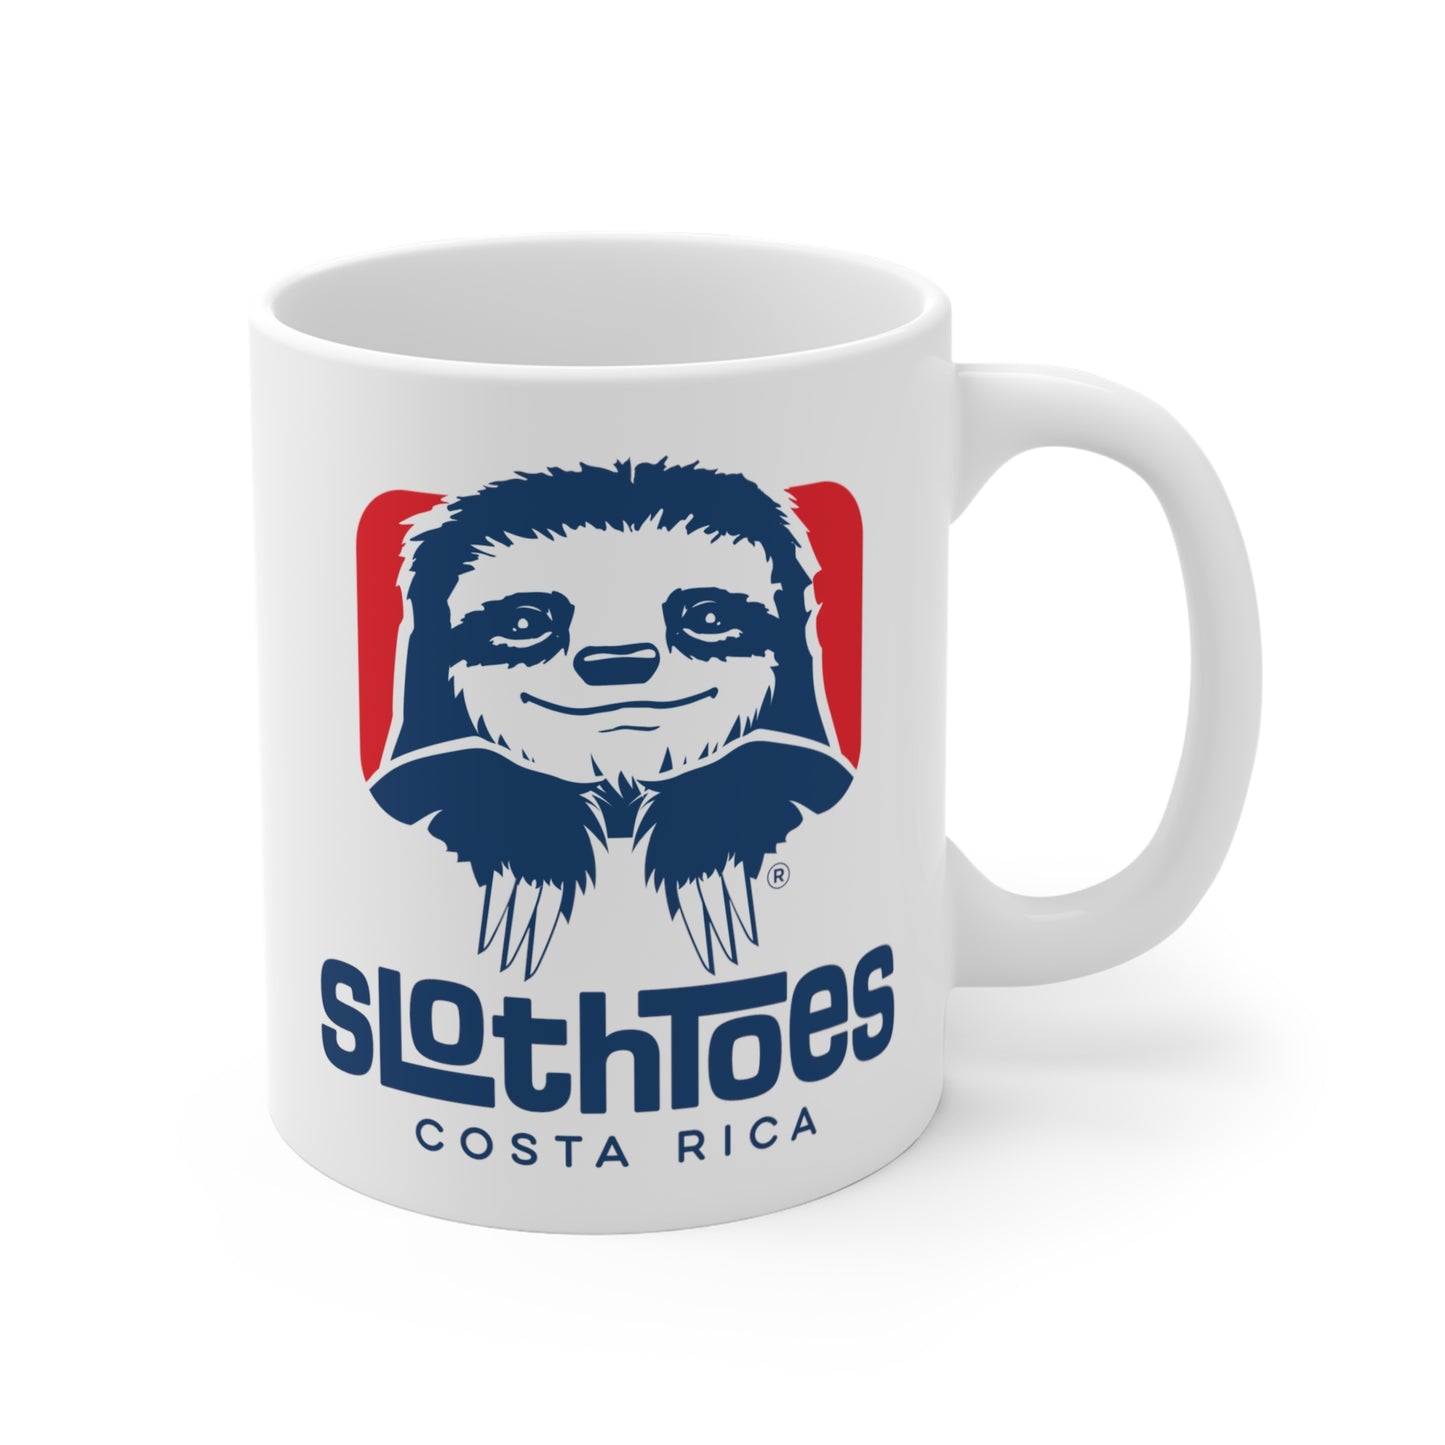 Sloth Toes Ceramic Mug